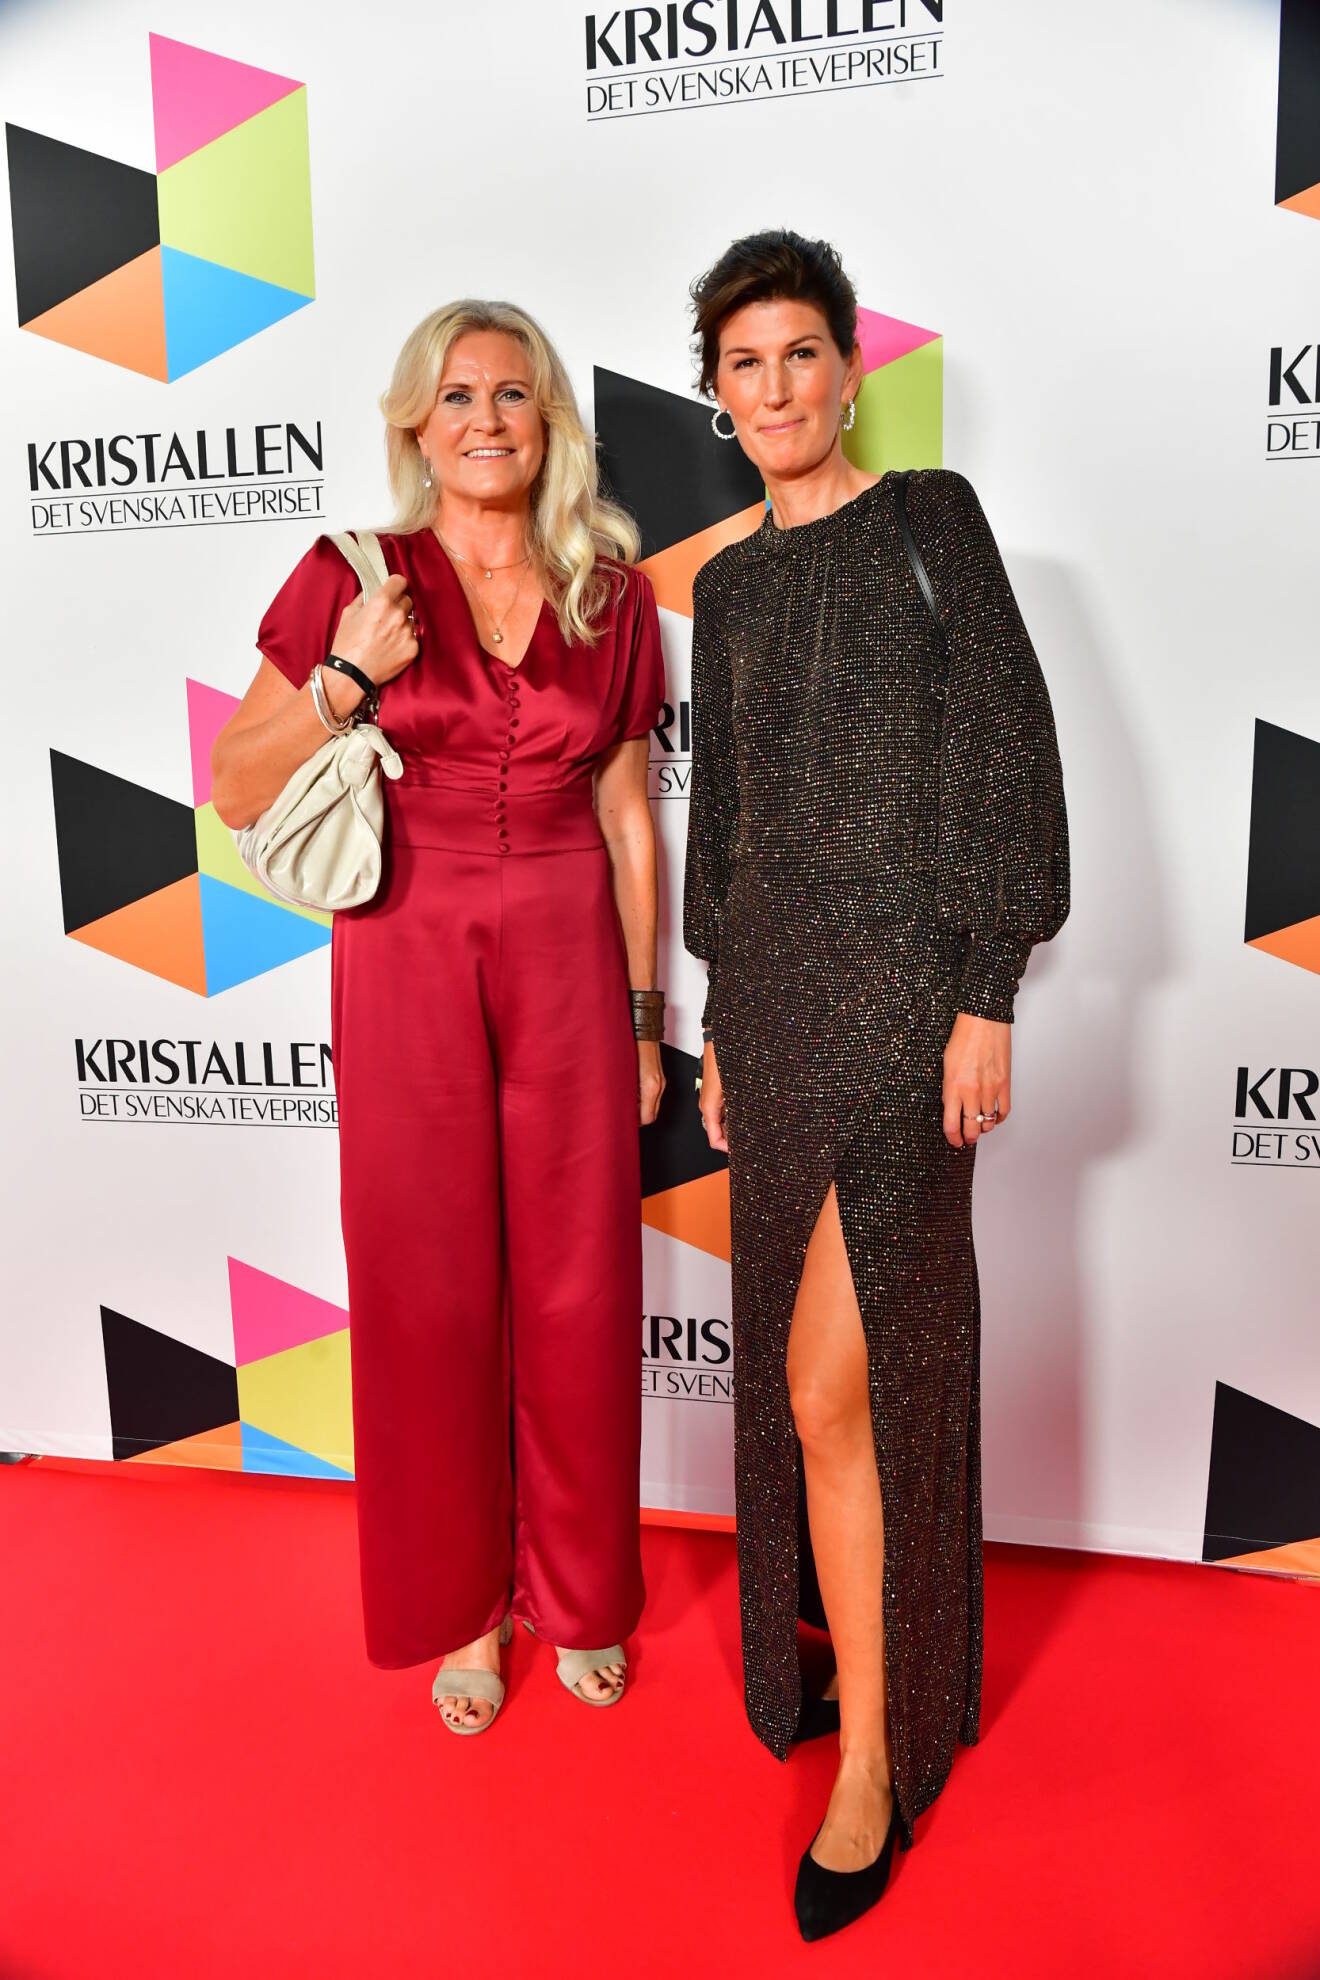 SVT:s programledare Camilla Kvartoft och nyhetsankare Cecilia Gralde.